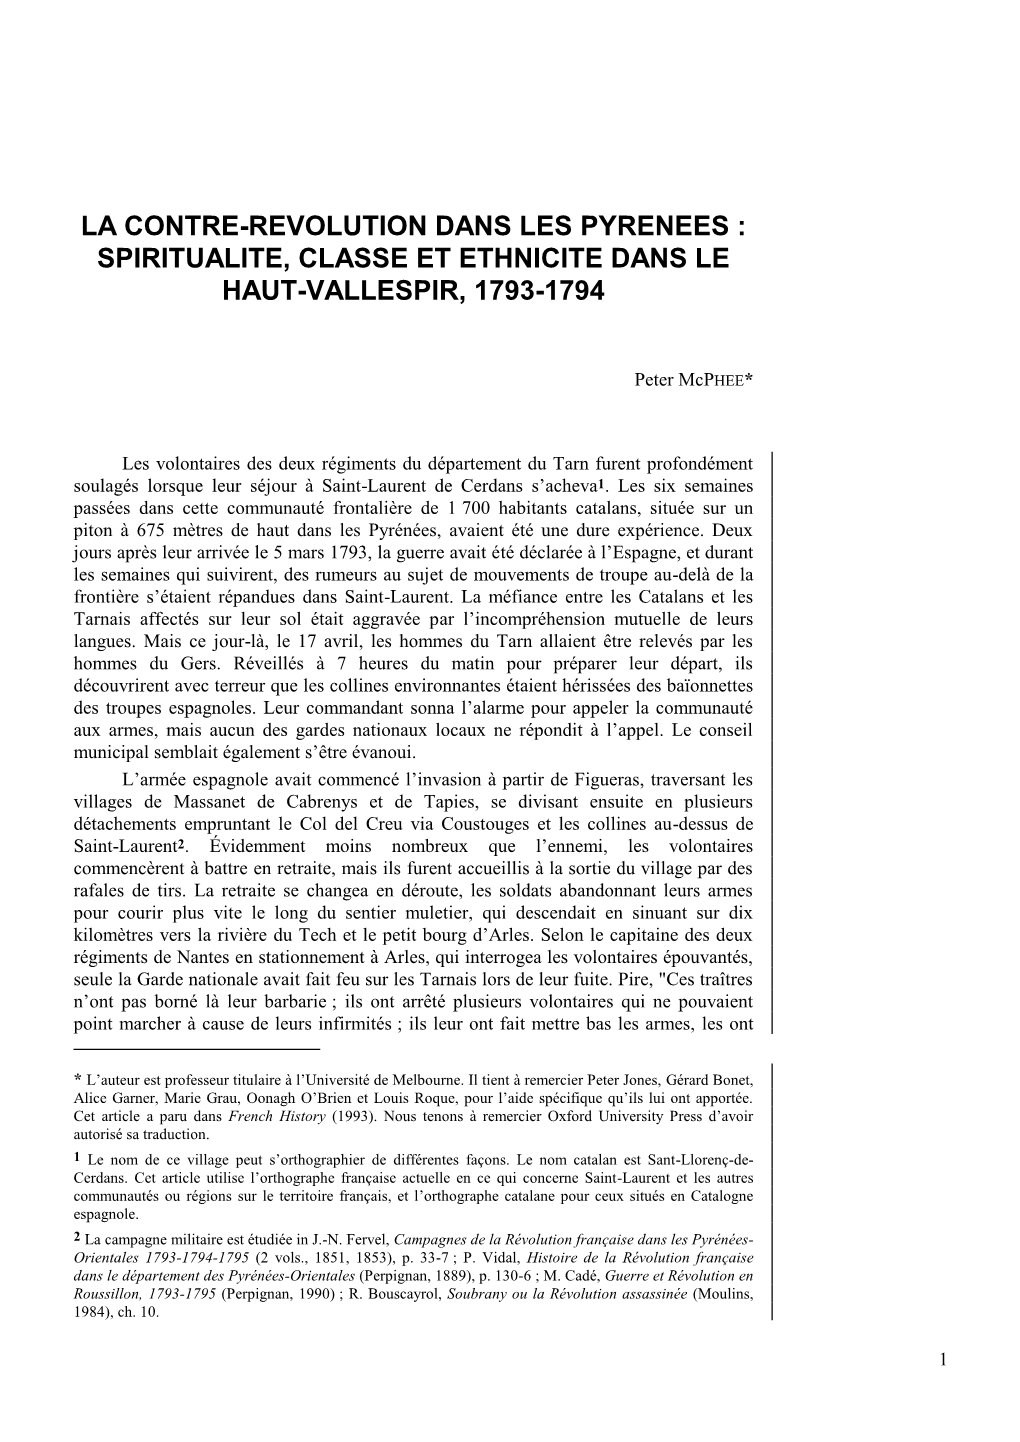 La Contre-Revolution Dans Les Pyrenees : Spiritualite, Classe Et Ethnicite Dans Le Haut-Vallespir, 1793-1794